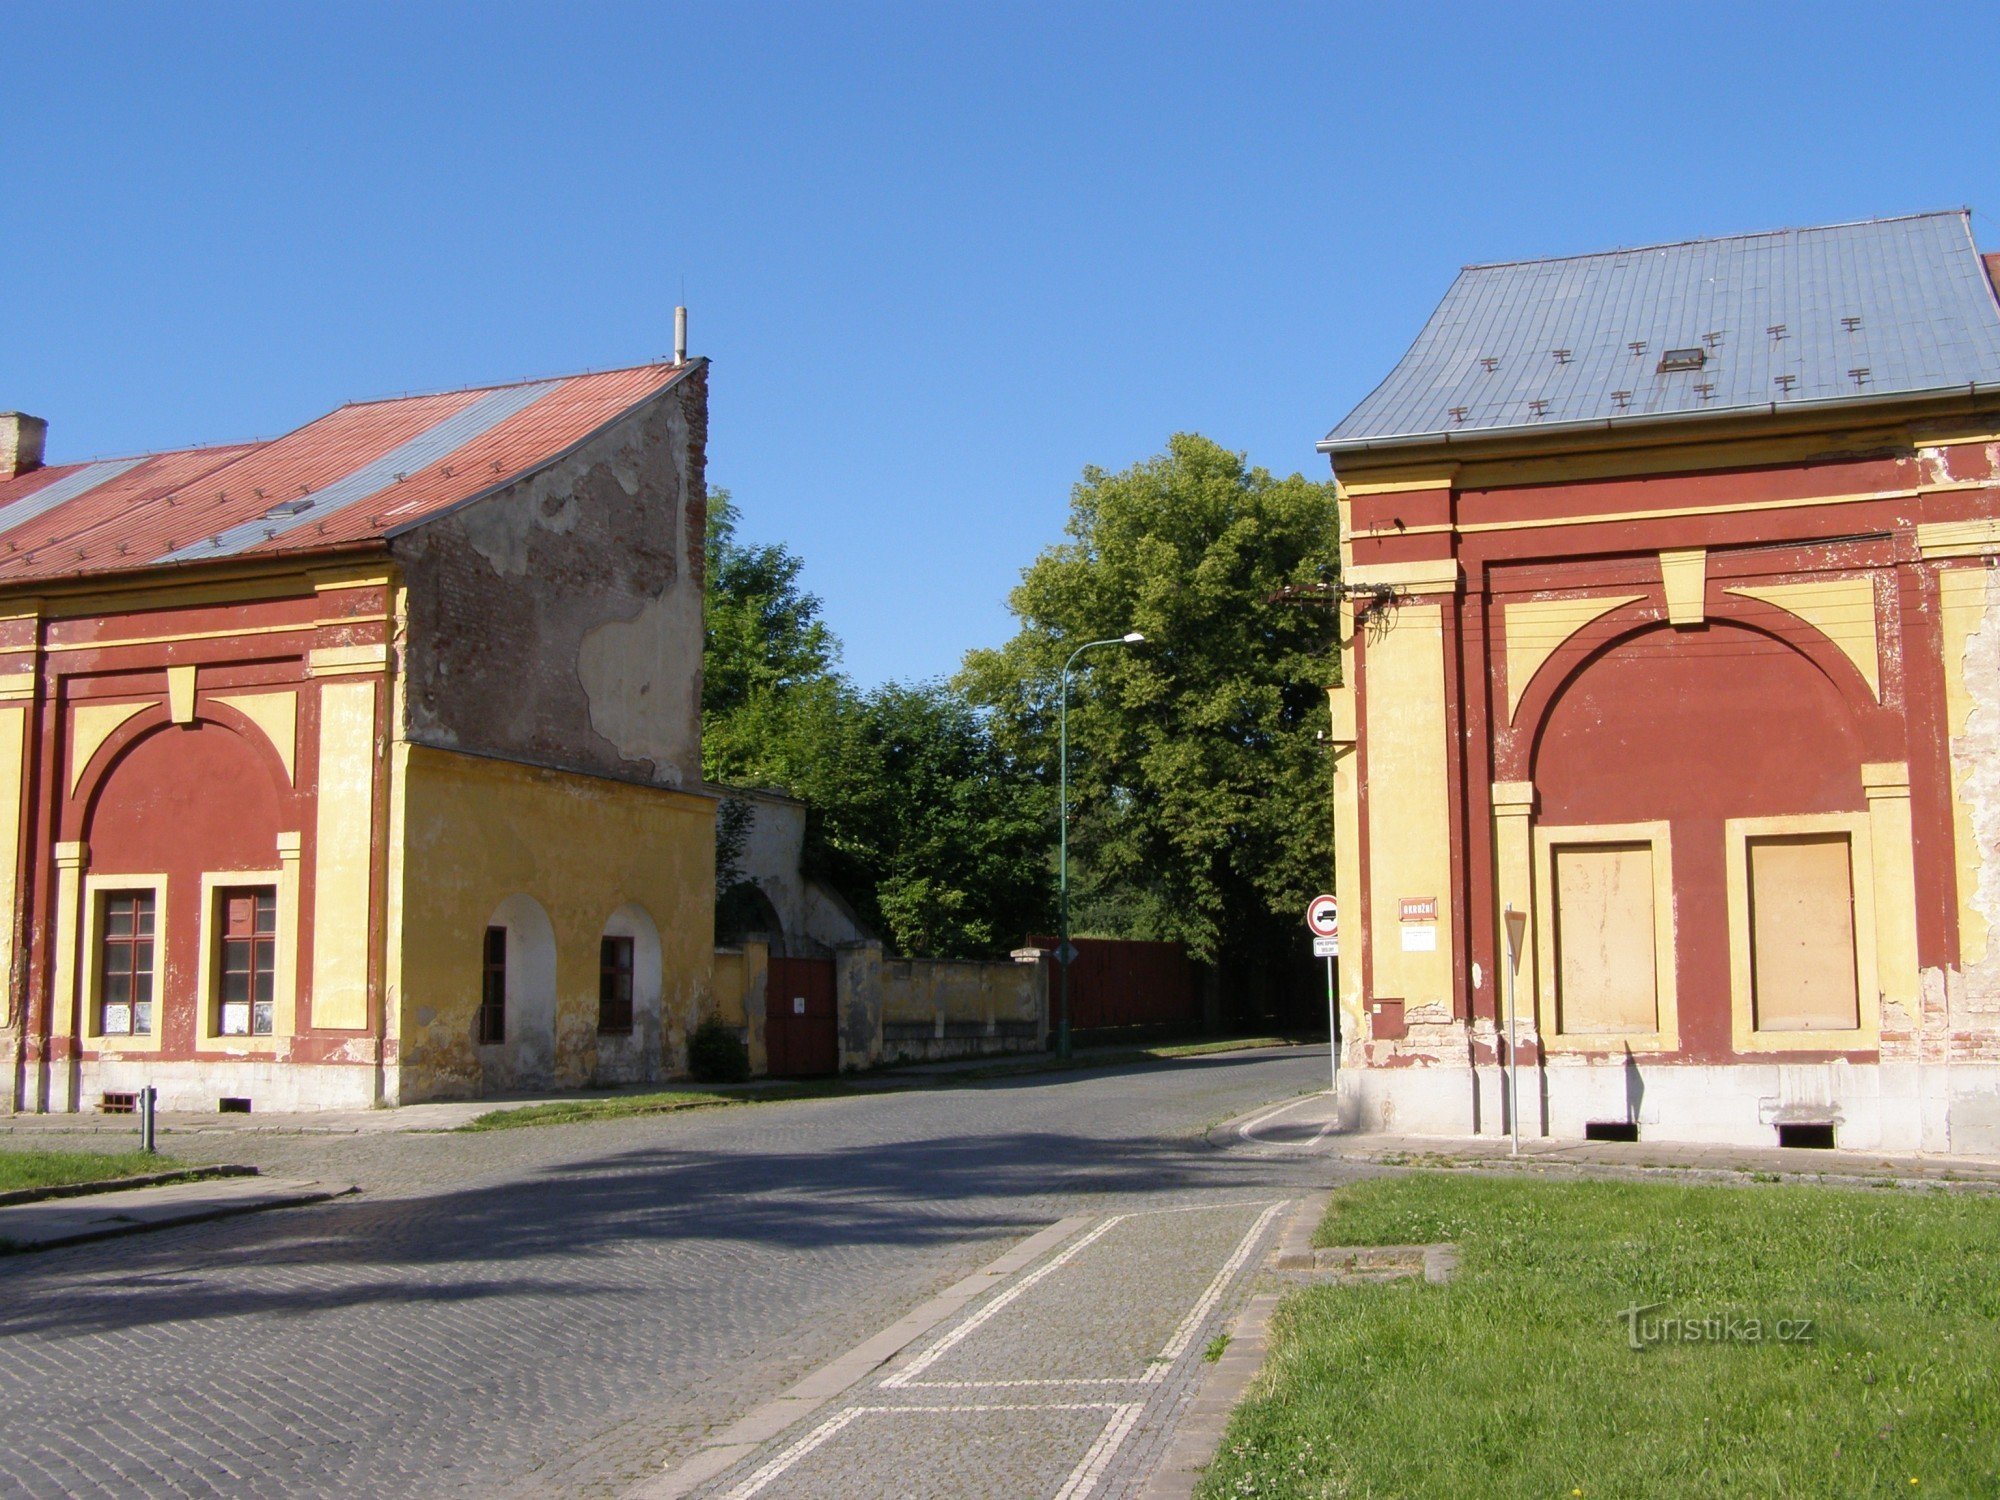 Йозефов - Градецкие ворота